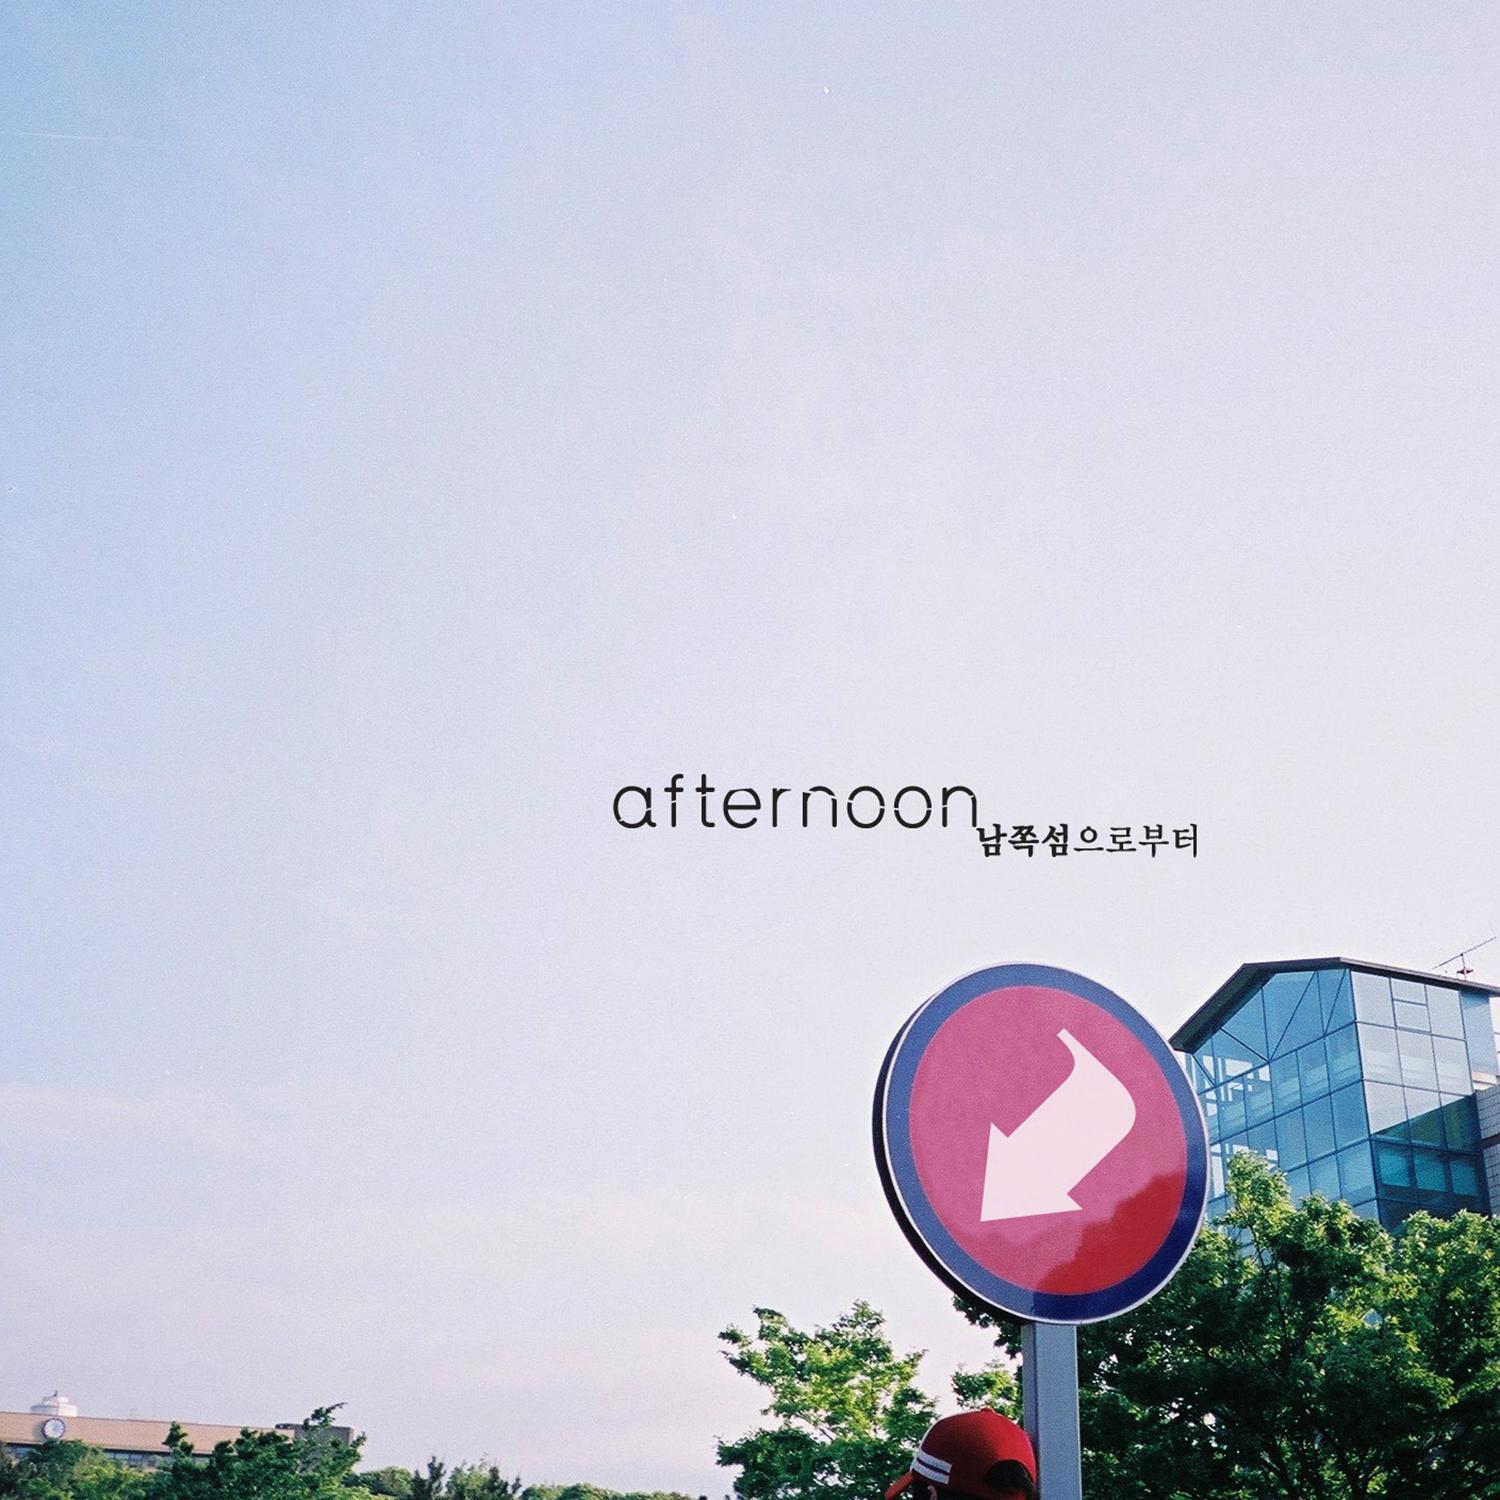 Afternoon - 서귀포의 환상